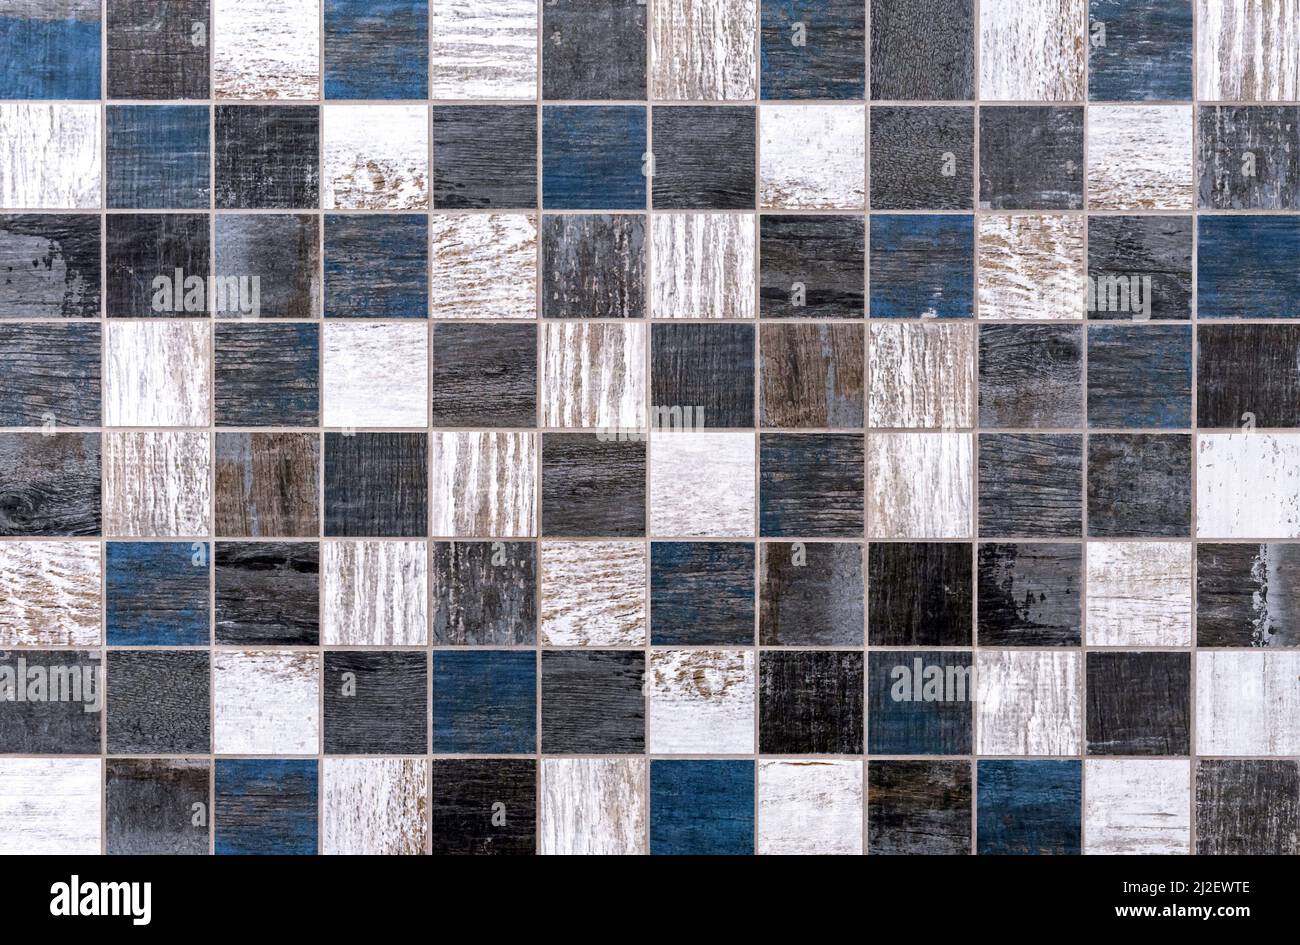 Mosaïque de céramique avec des carrés gris, bleus et blancs et une structure en imitation de bois. Banque D'Images